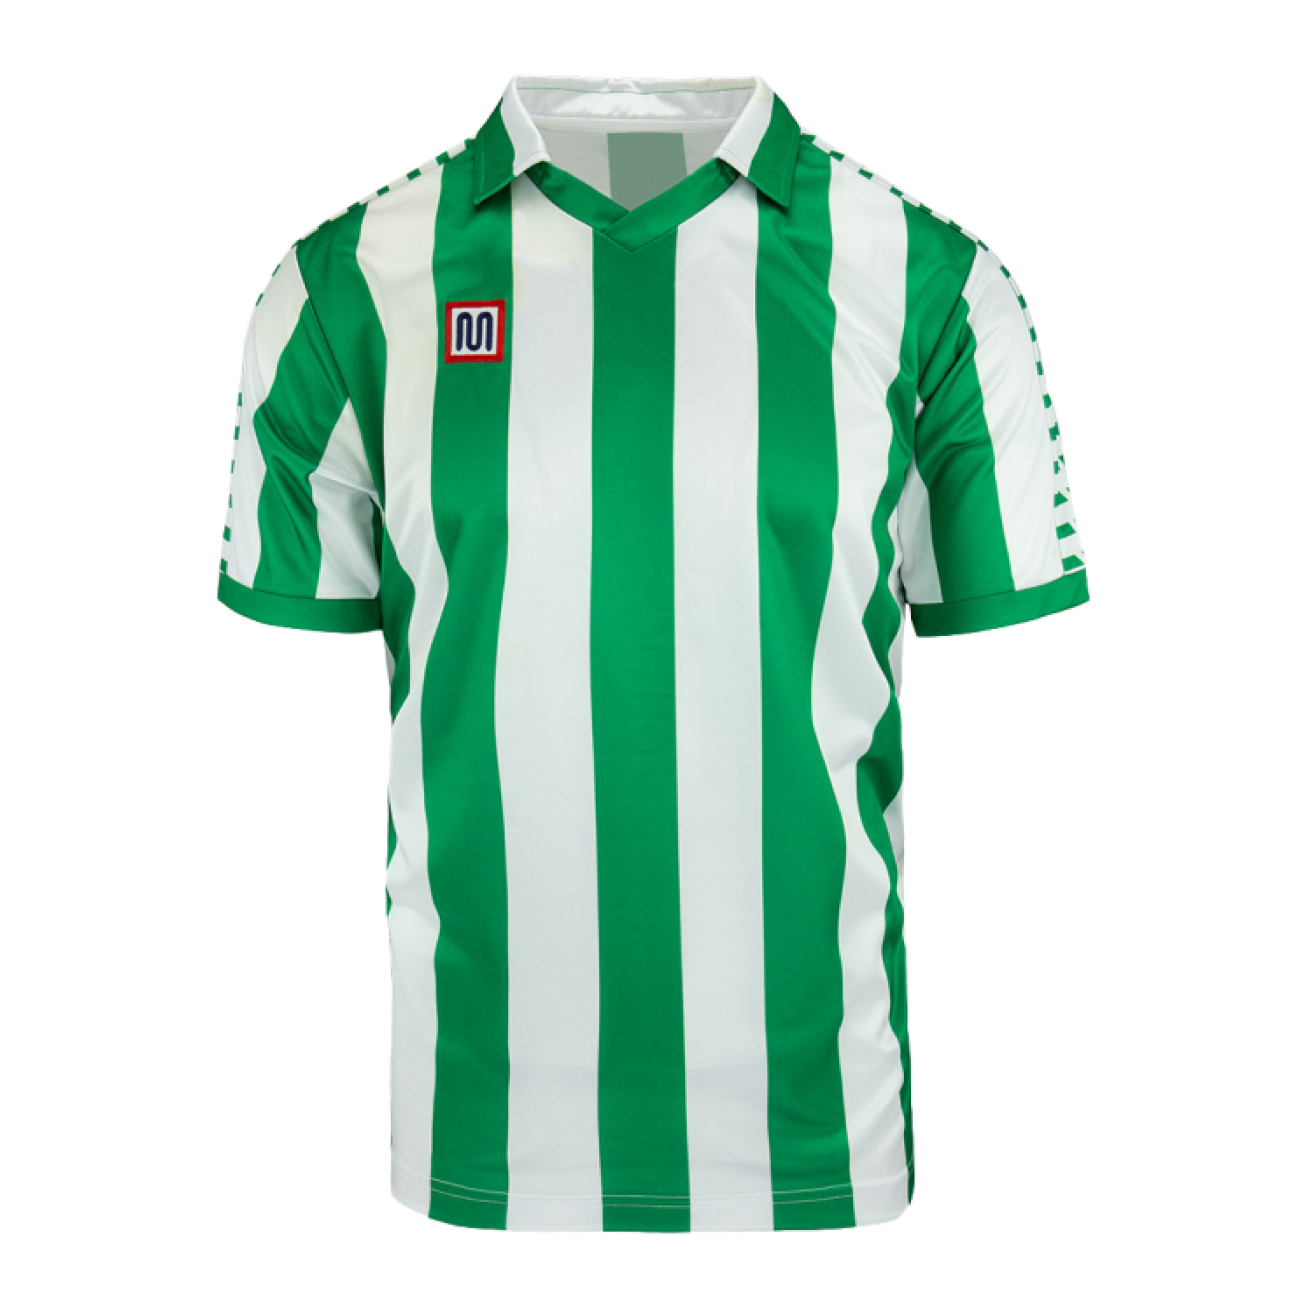 Camiseta retro Real Betis Balompié | Retrofootball®